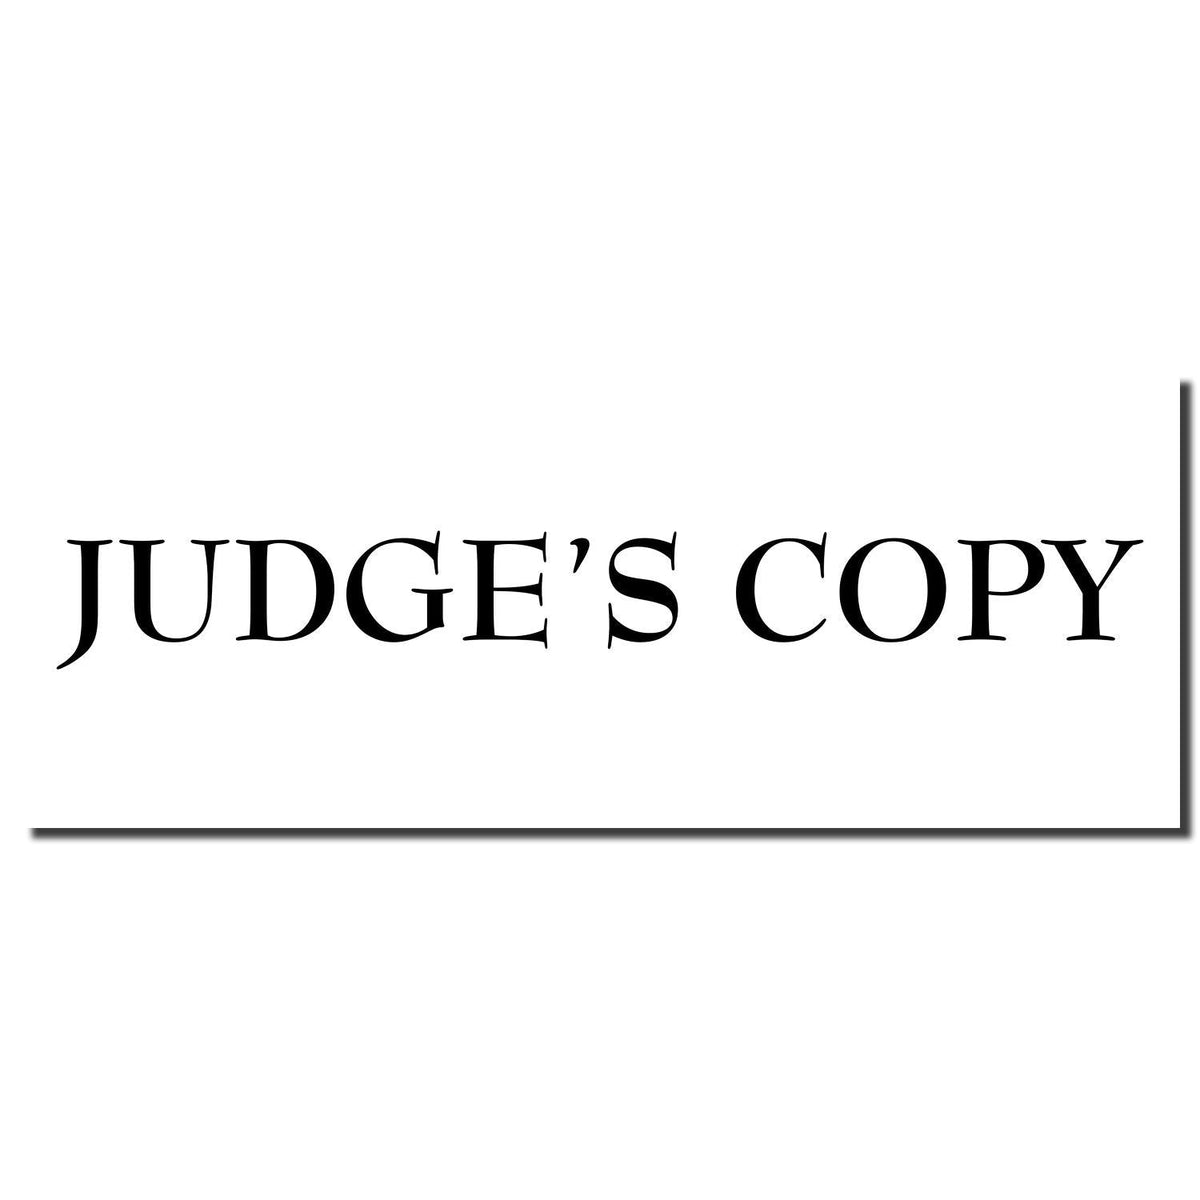 Enlarged Imprint Large Judges Copy Rubber Stamp Sample